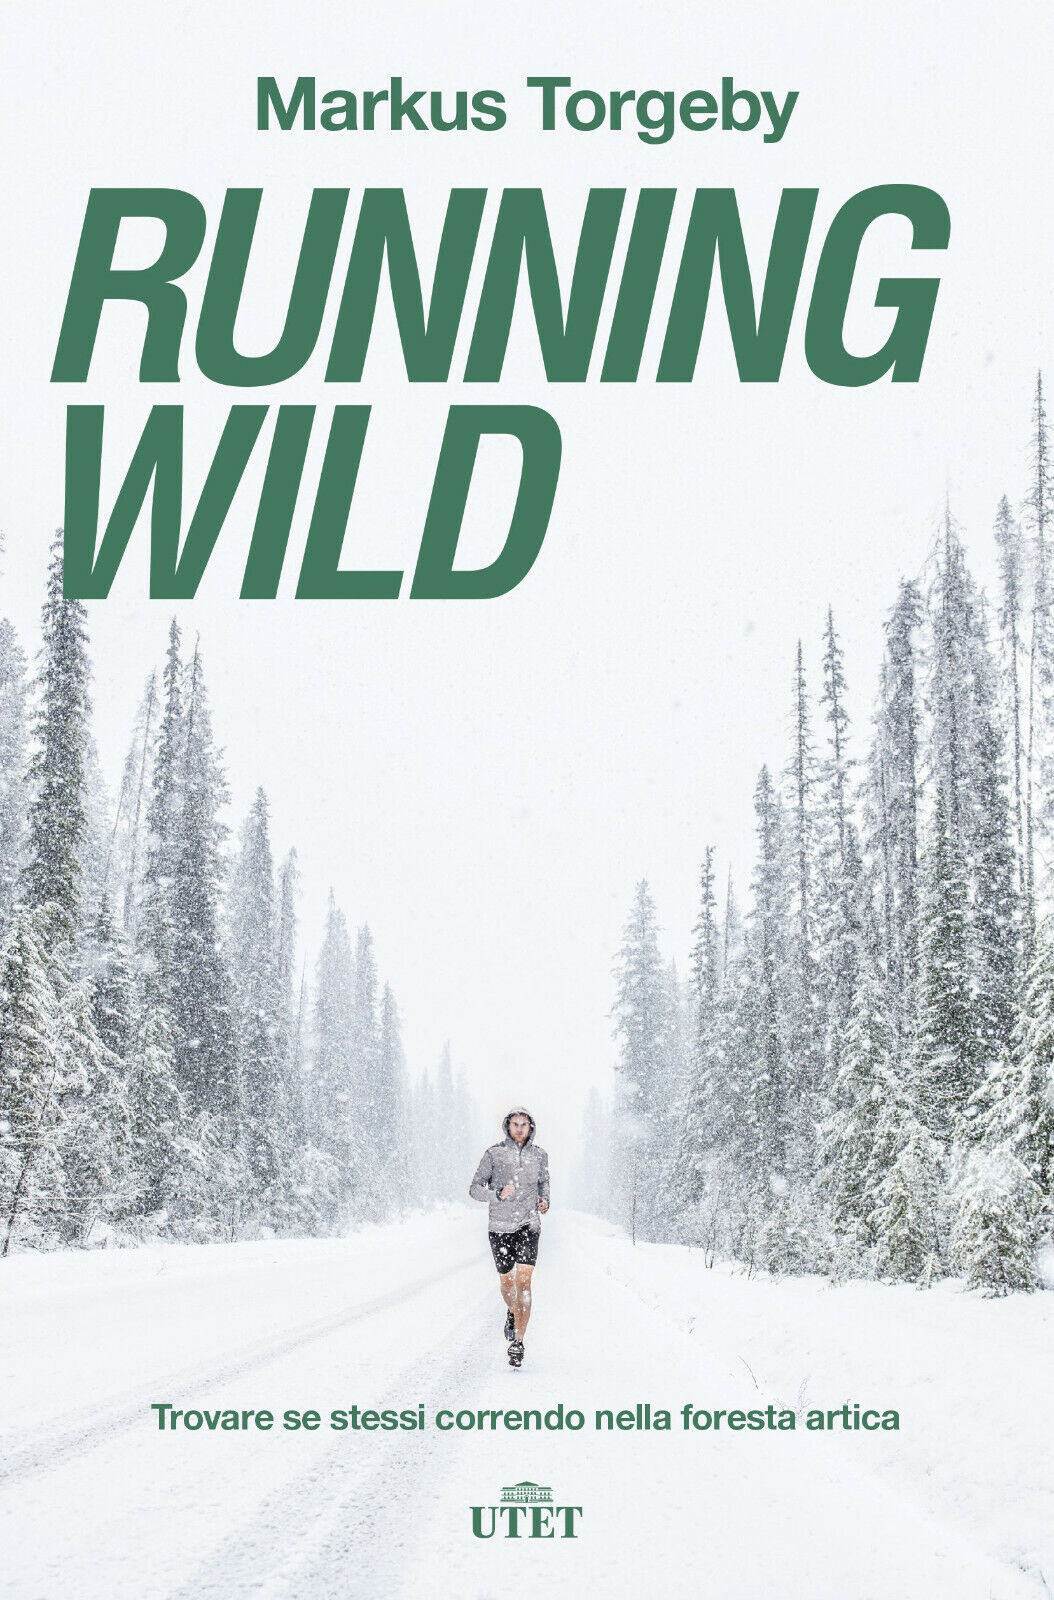 Running wild - Markus Torgeby - UTET, 2018